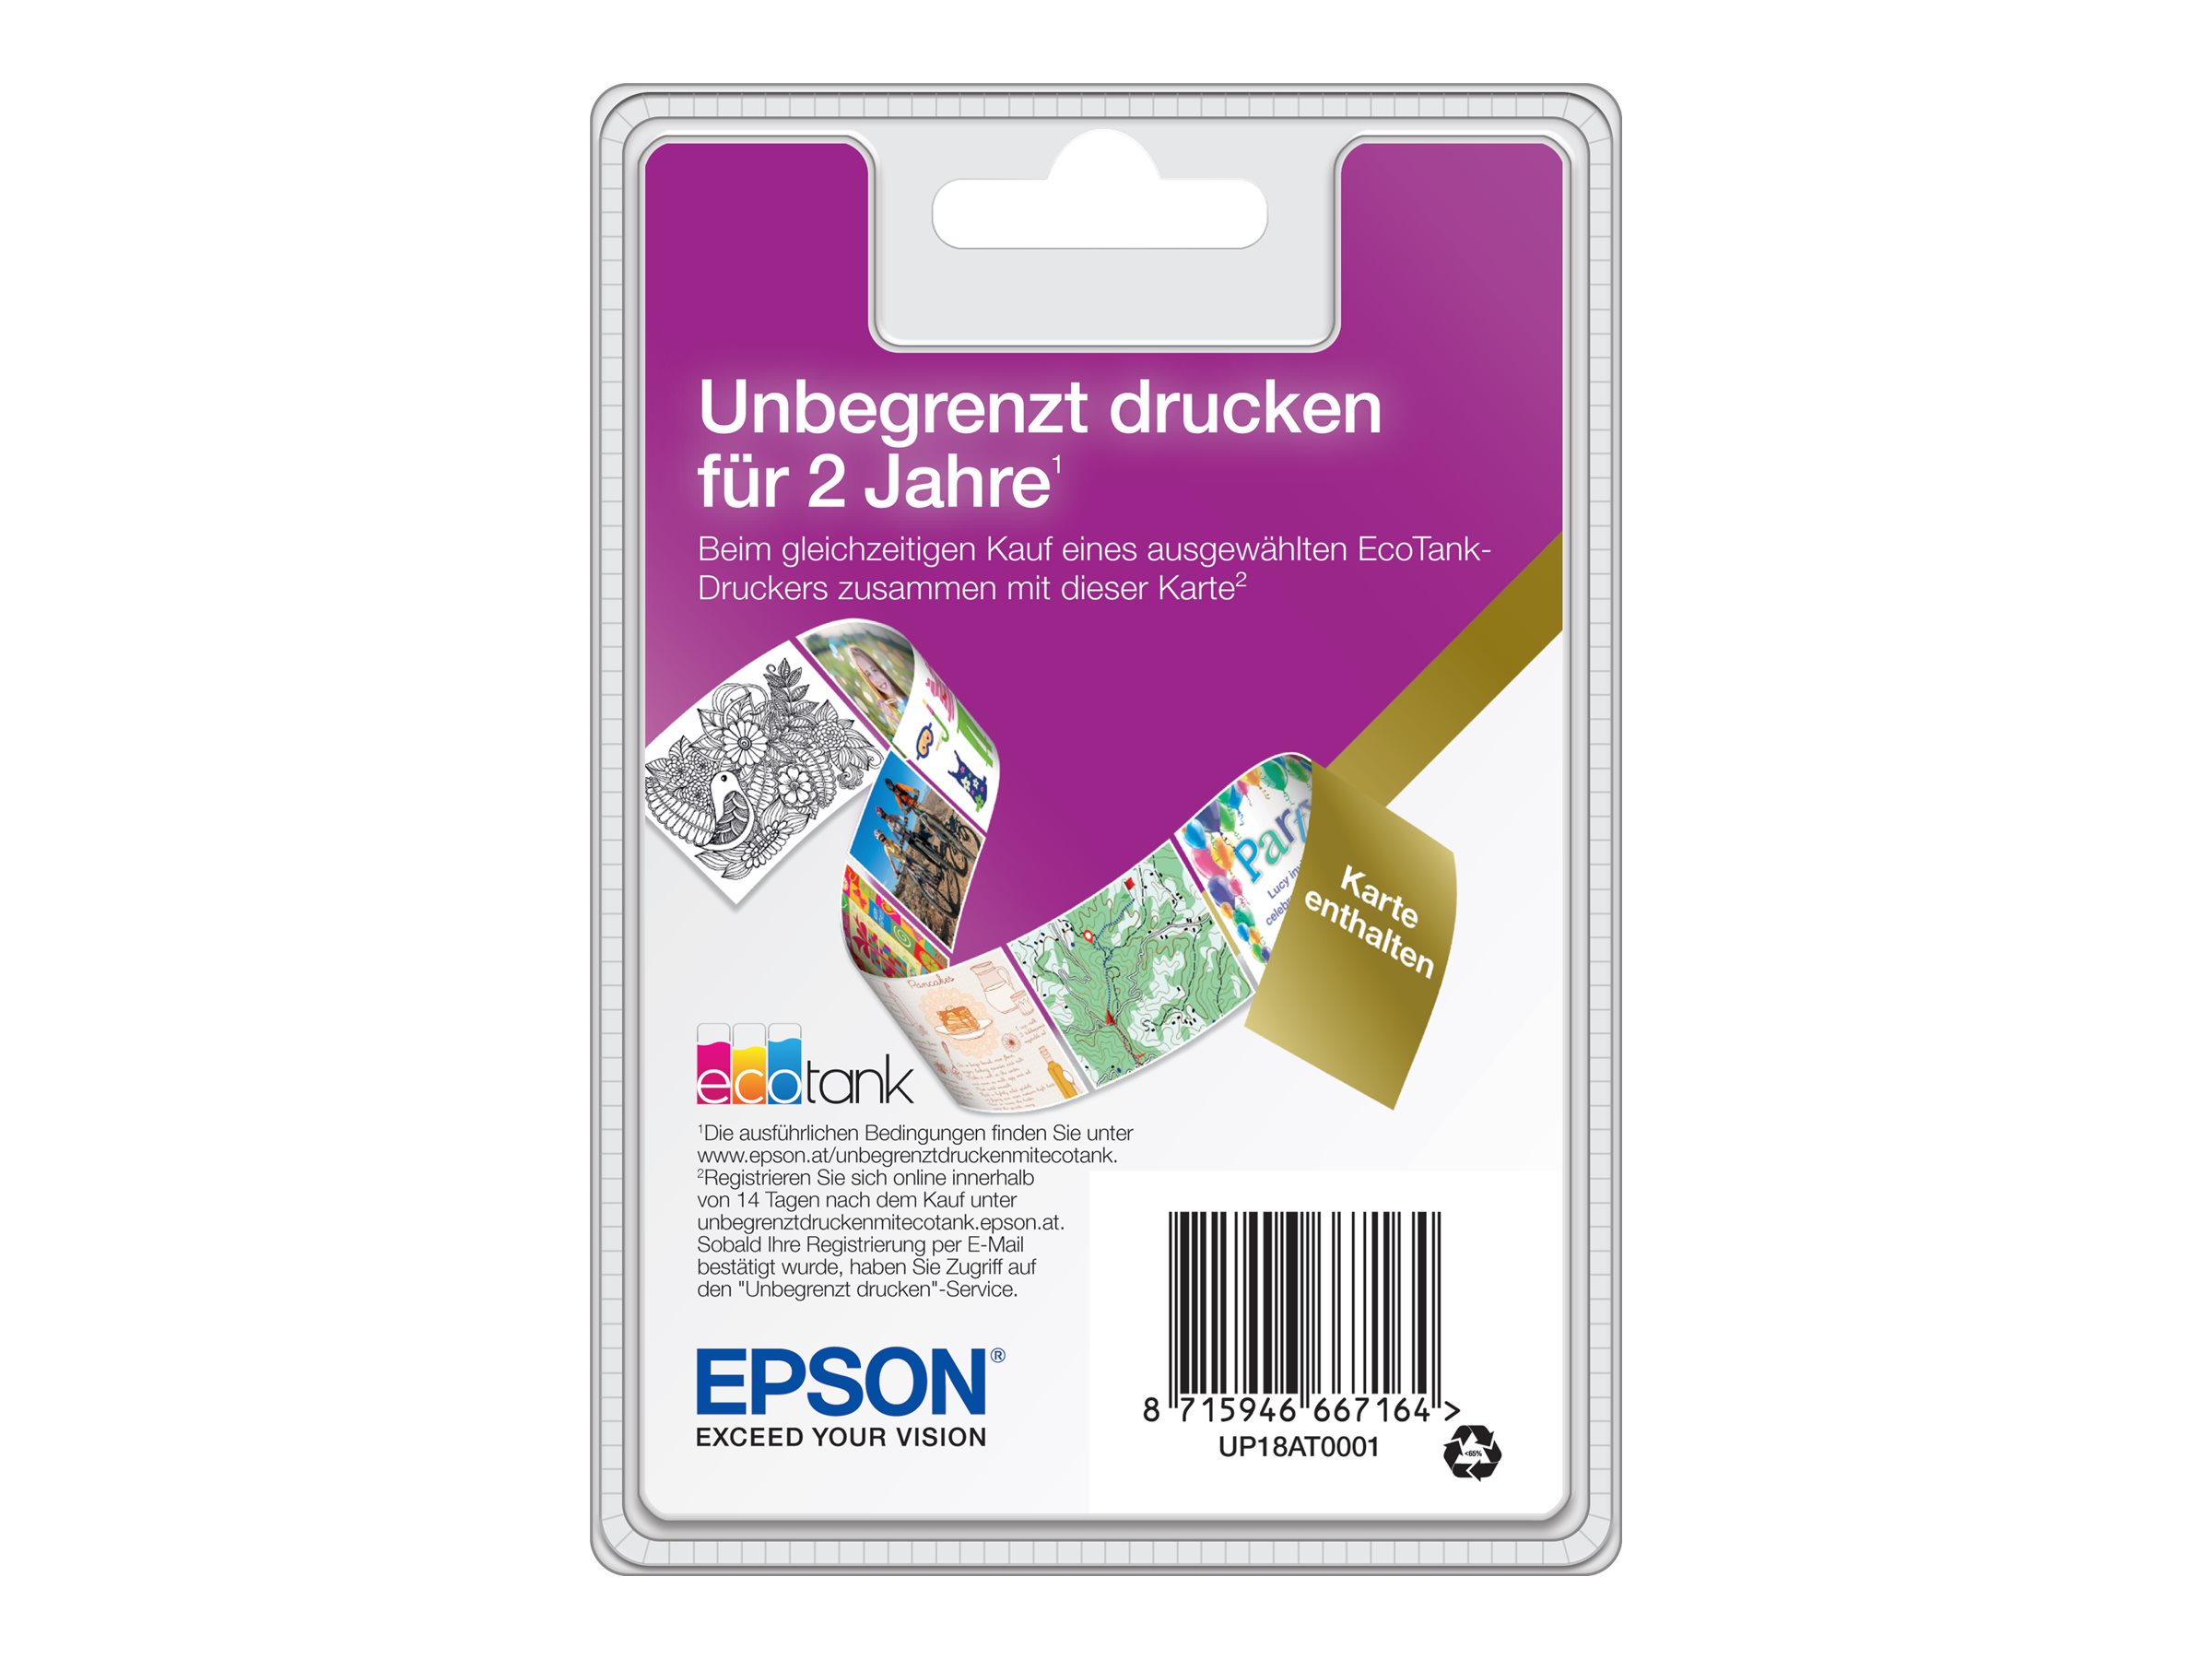 Epson Unlimited Printing with EcoTank - Serviceerweiterung